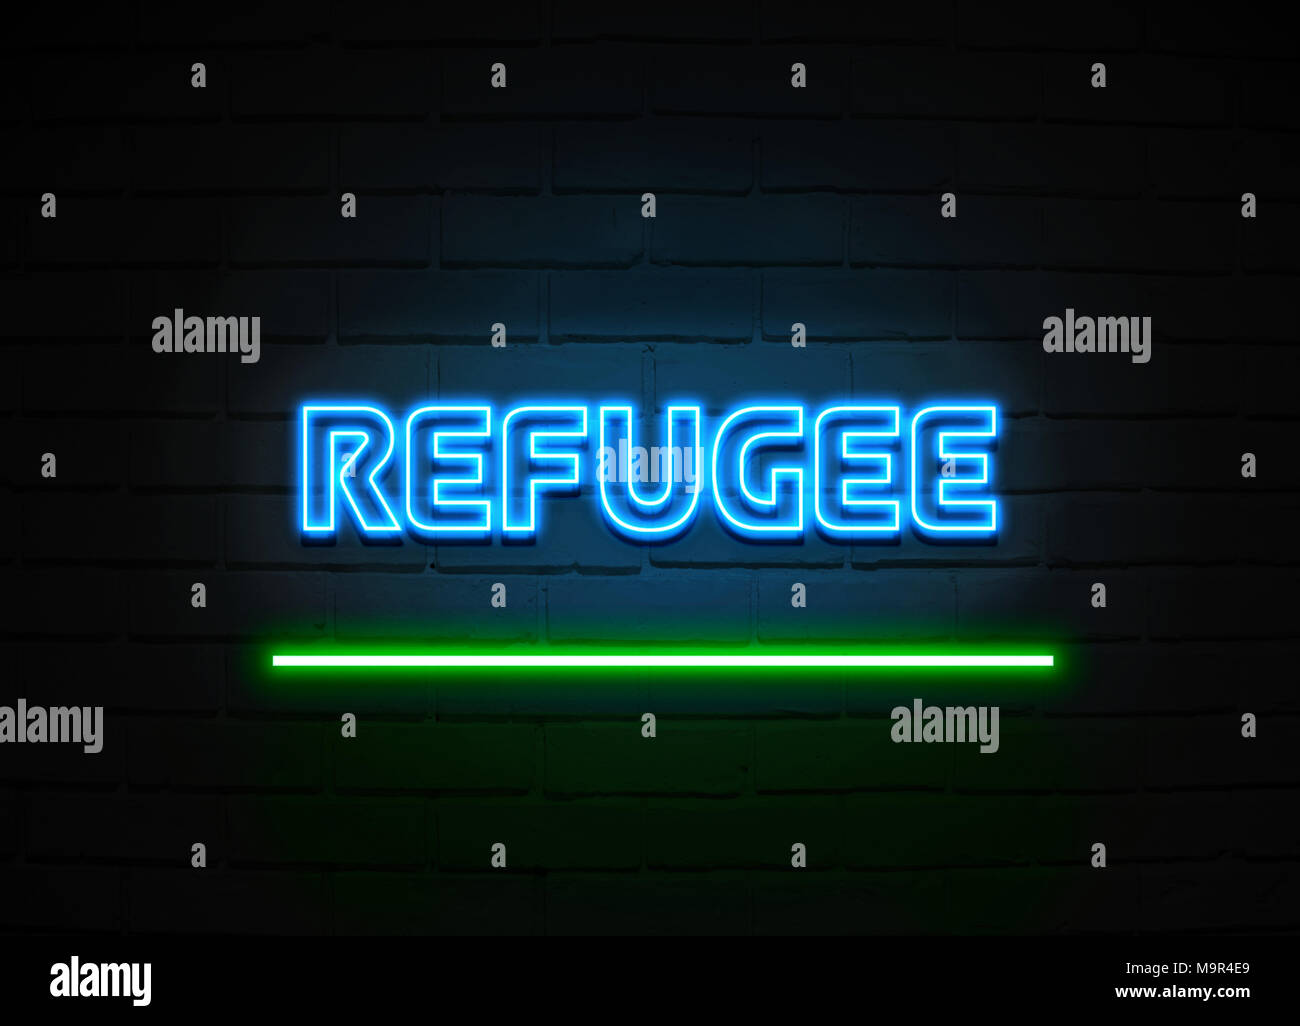 Flüchtling Leuchtreklame - glühende Leuchtreklame auf brickwall Wand - 3D-Royalty Free Stock Illustration dargestellt. Stockfoto